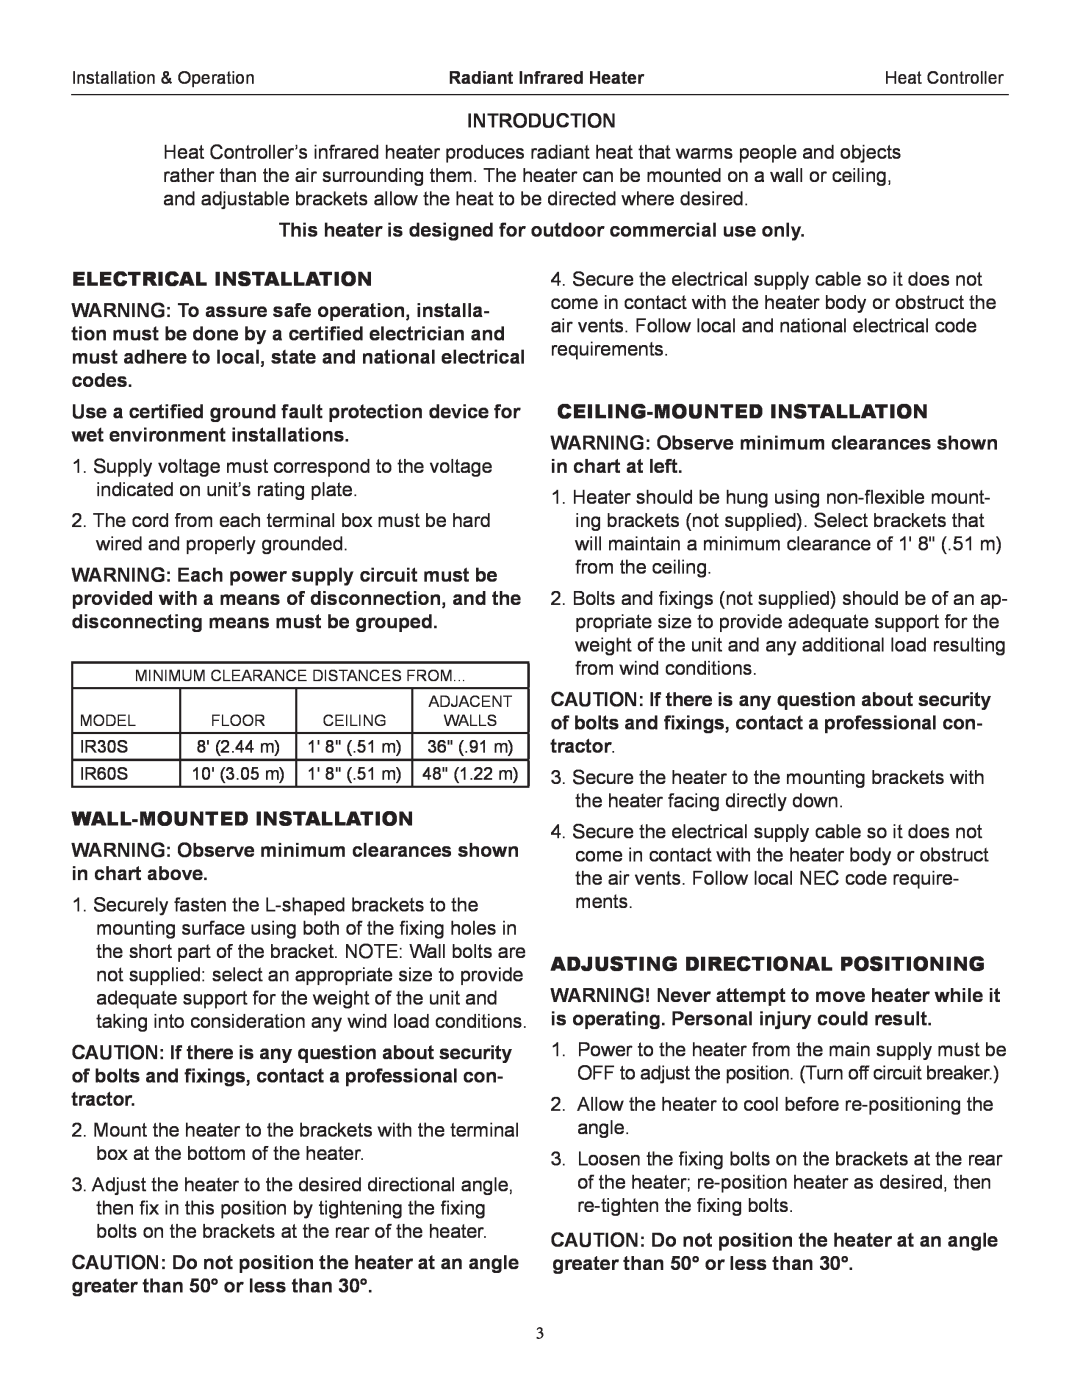 Heat Controller IR60S, IR30S operation manual Introduction 